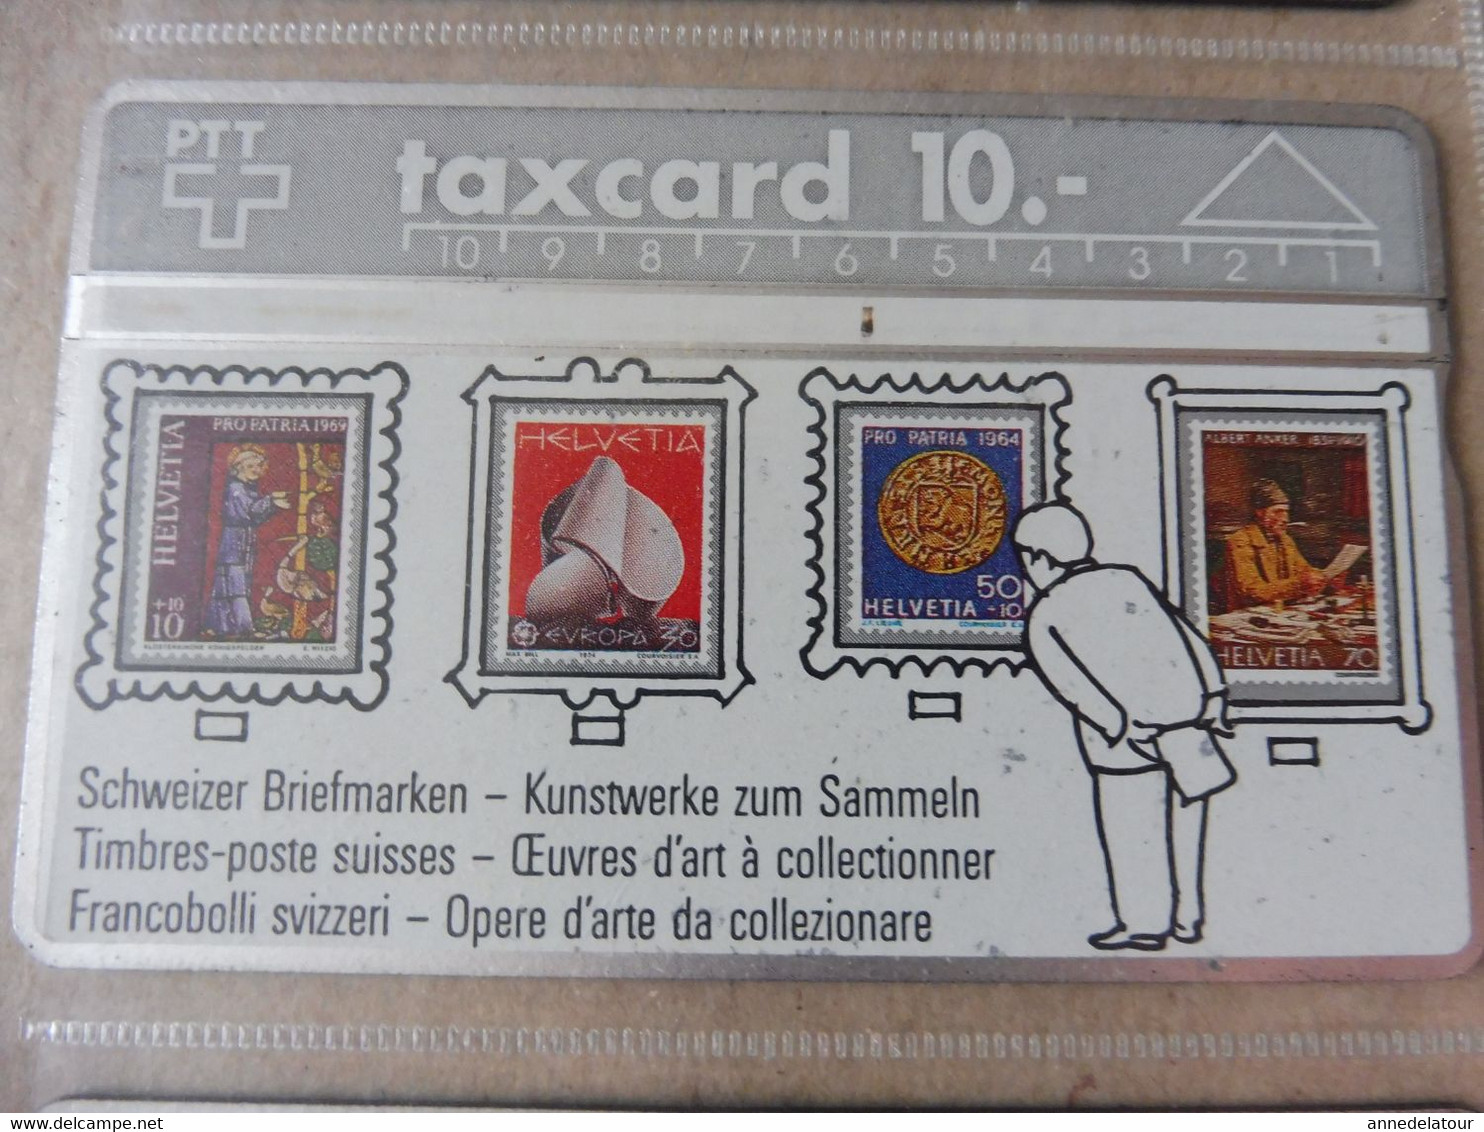 10 télécartes (cartes téléphoniques)  TAXCARD  (dont 1 unité P-TAXCARD SWISS TELECOM )  ,  origine Suisse